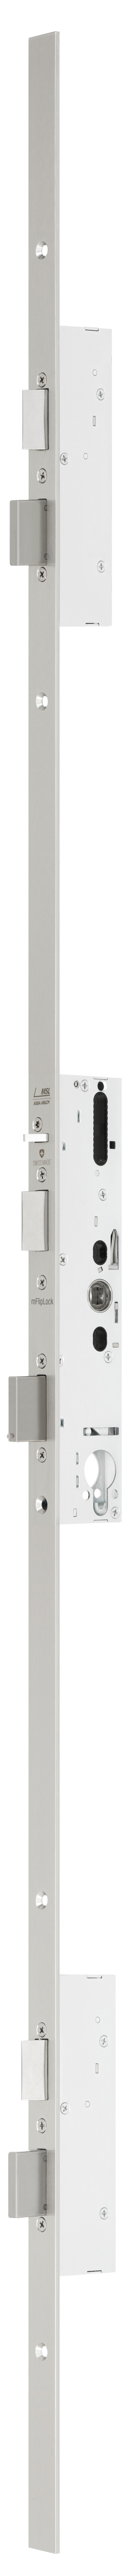 mFlipLock Panik-Sicherheits-Mehrpunktverriegelungen 24444PE-ZF